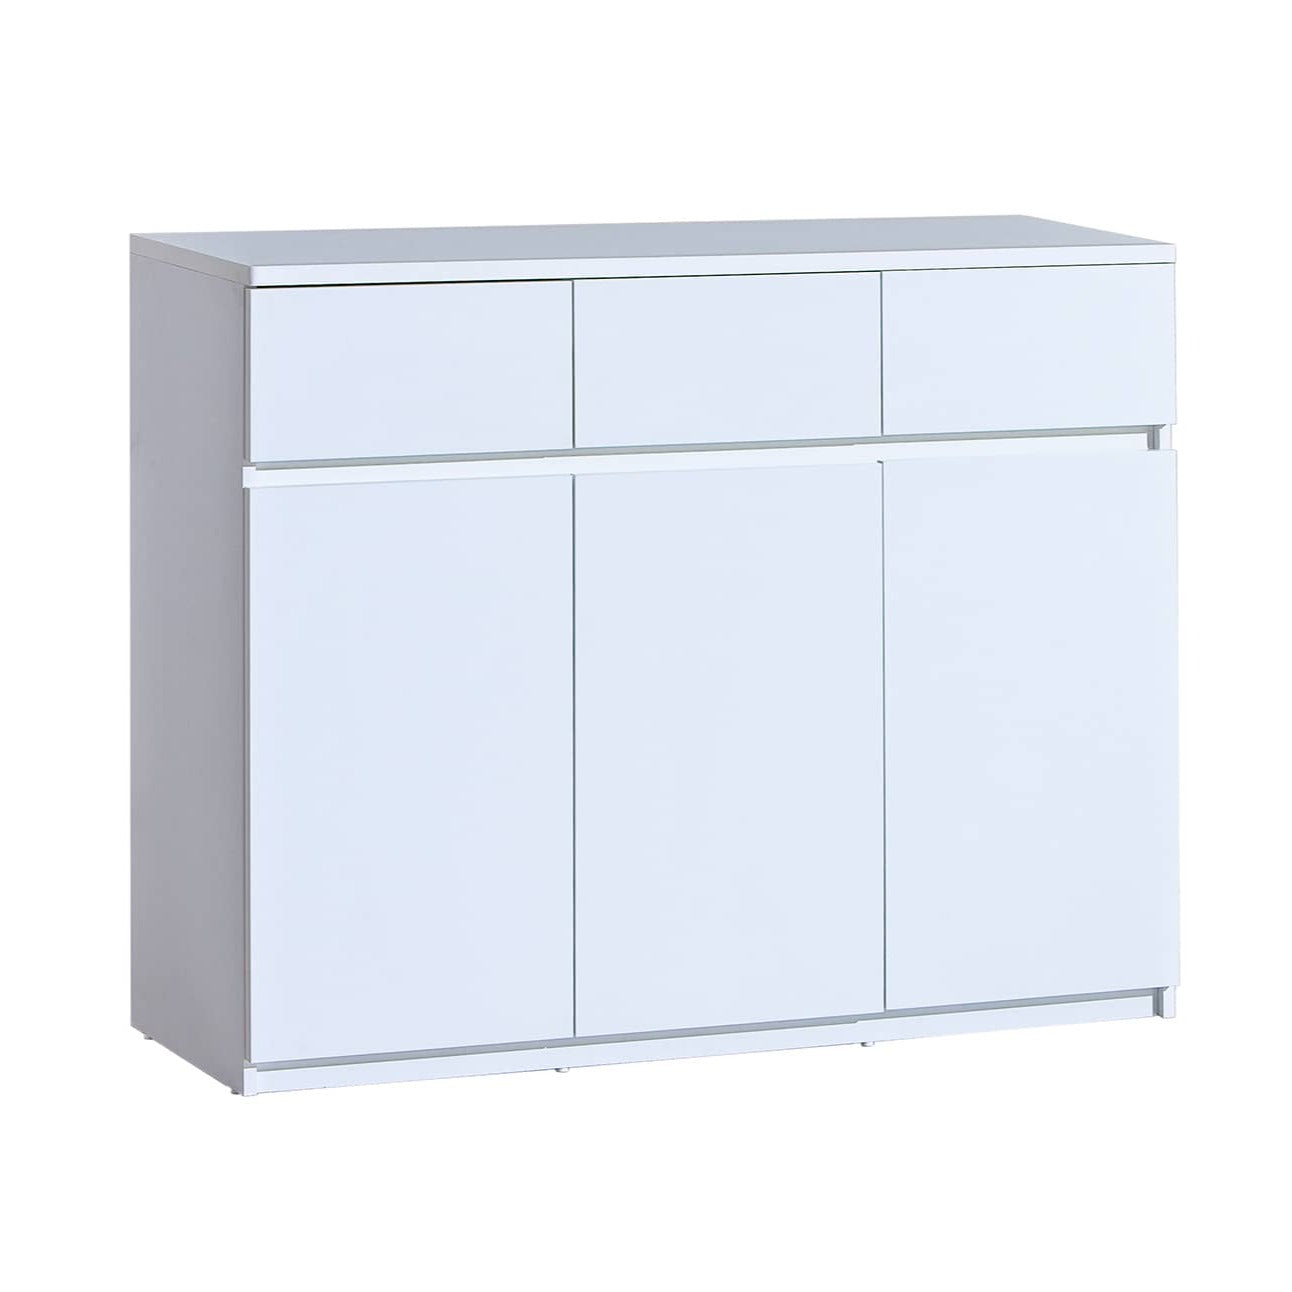 Arca AR6 Sideboard Cabinet 120cm